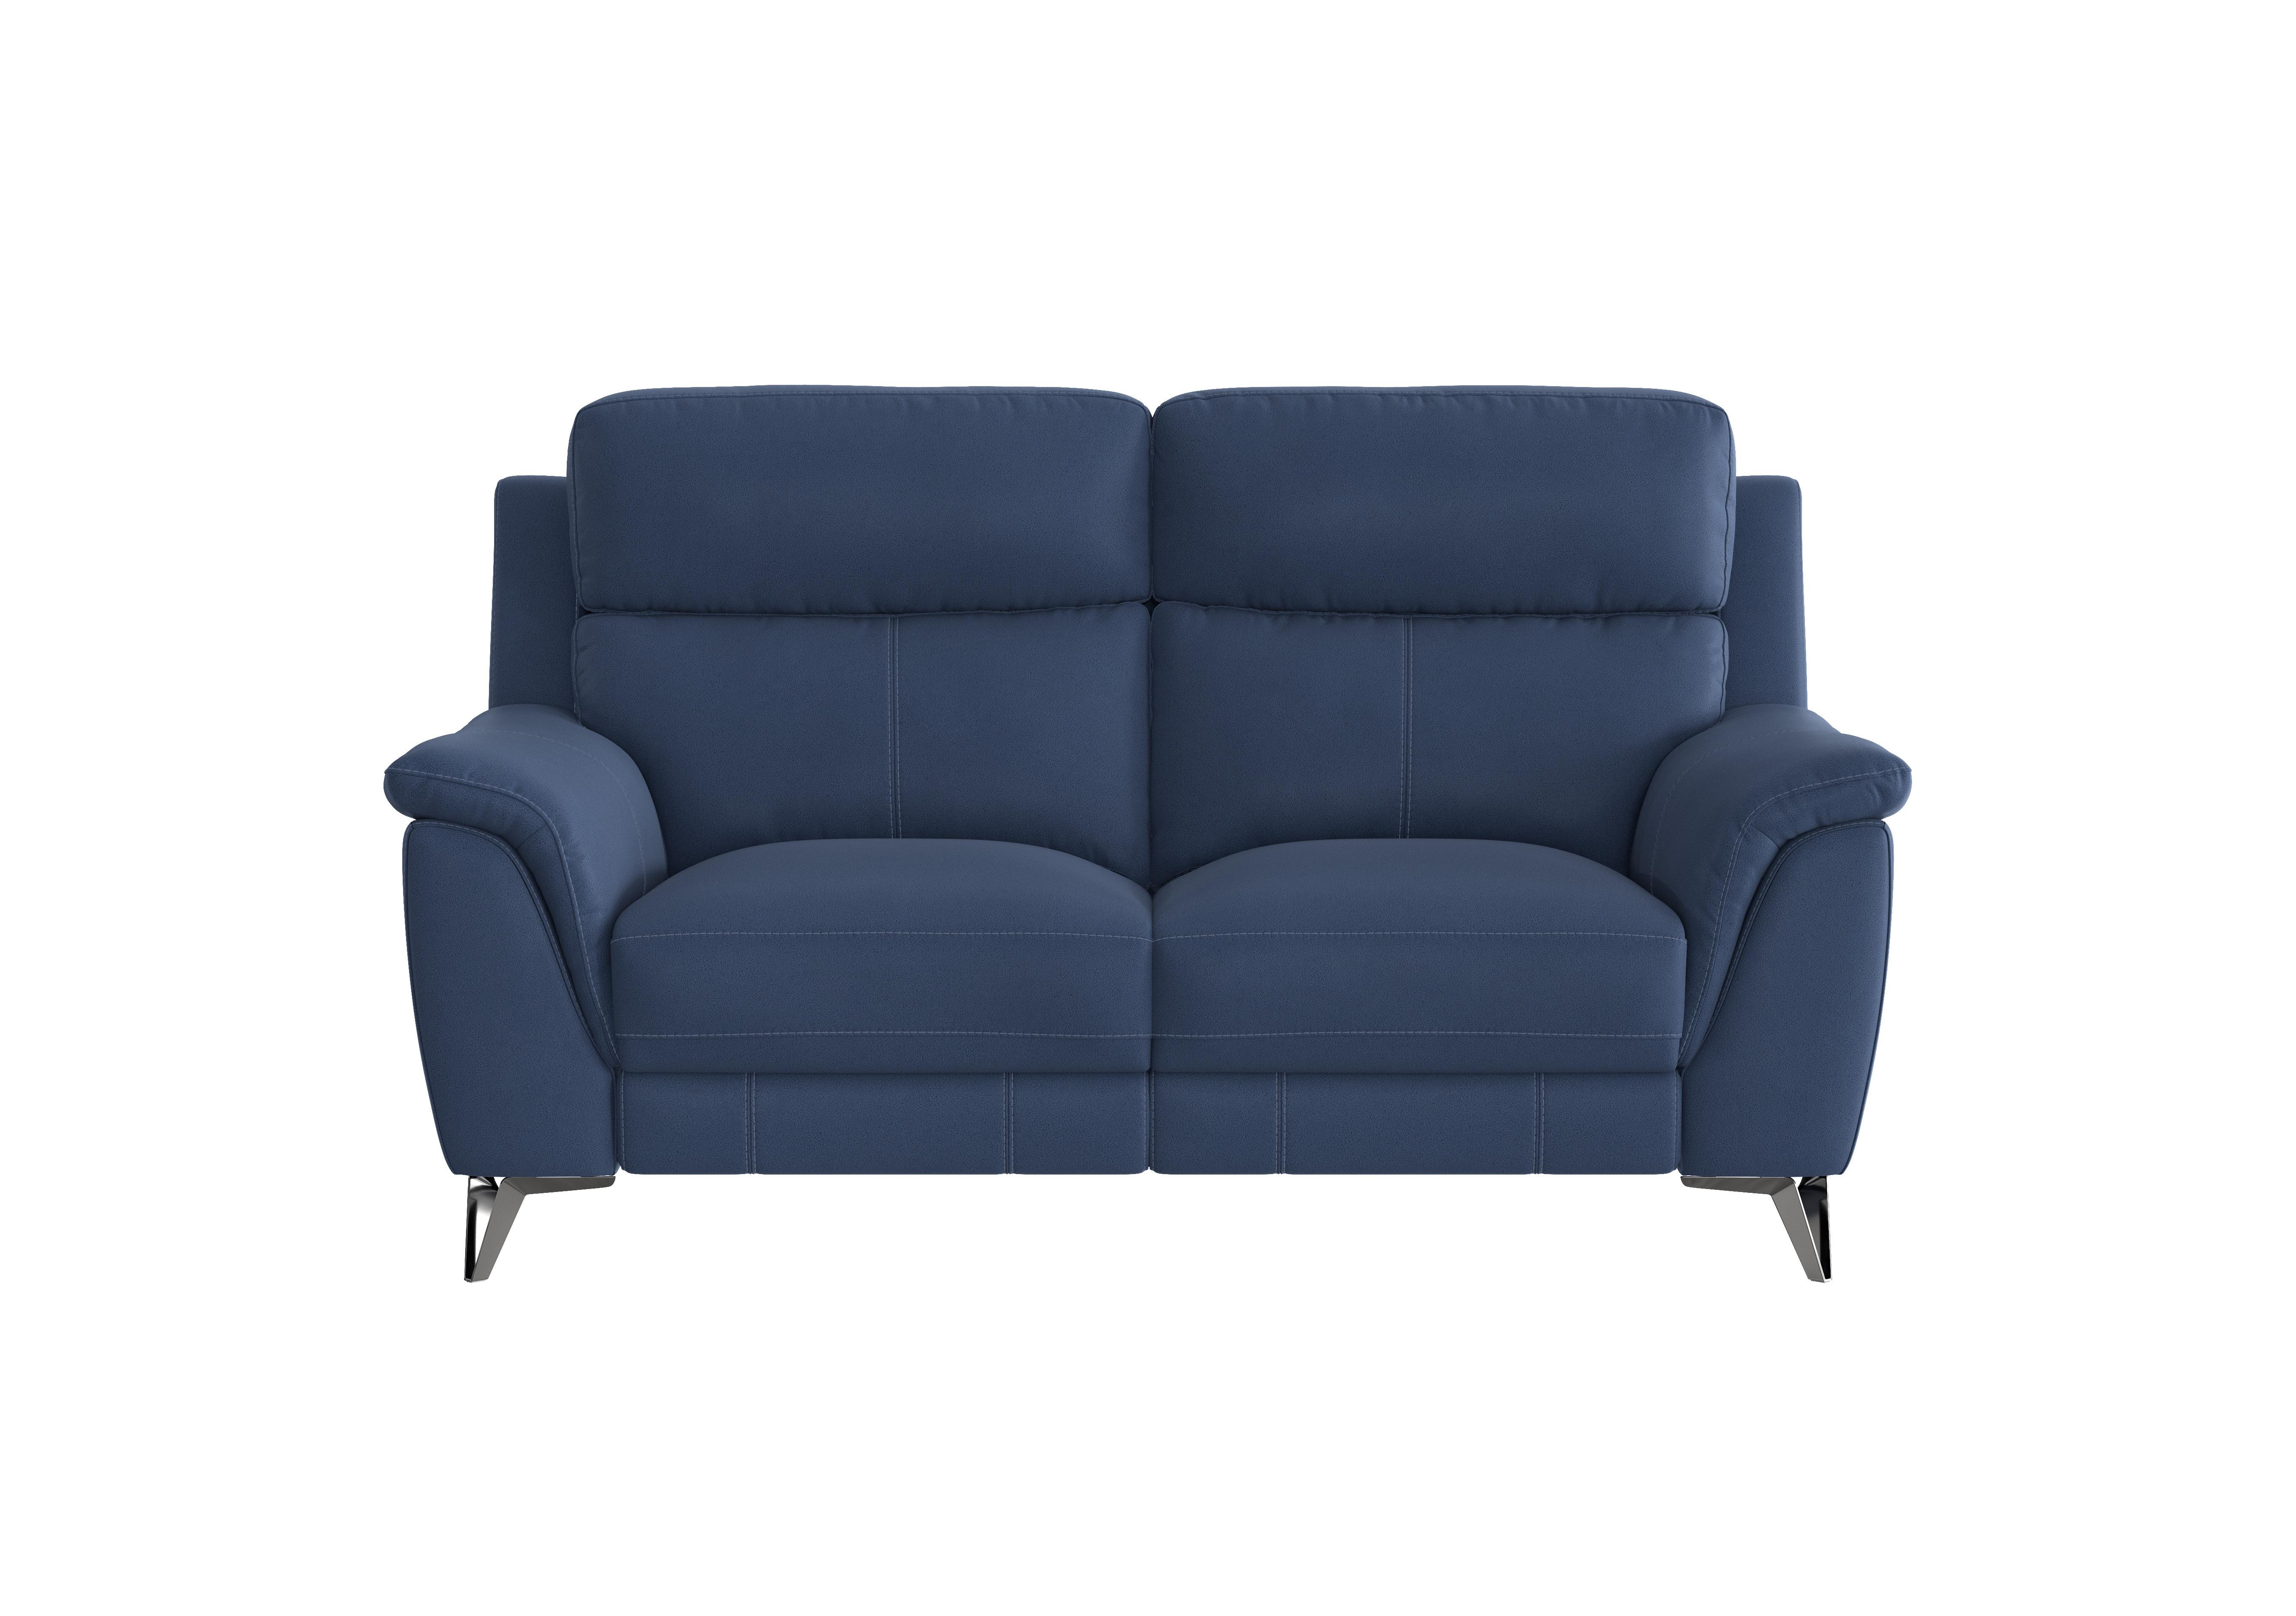 Contempo 2 Seater Fabric Sofa in Bfa-Blj-R10 Blue on Furniture Village